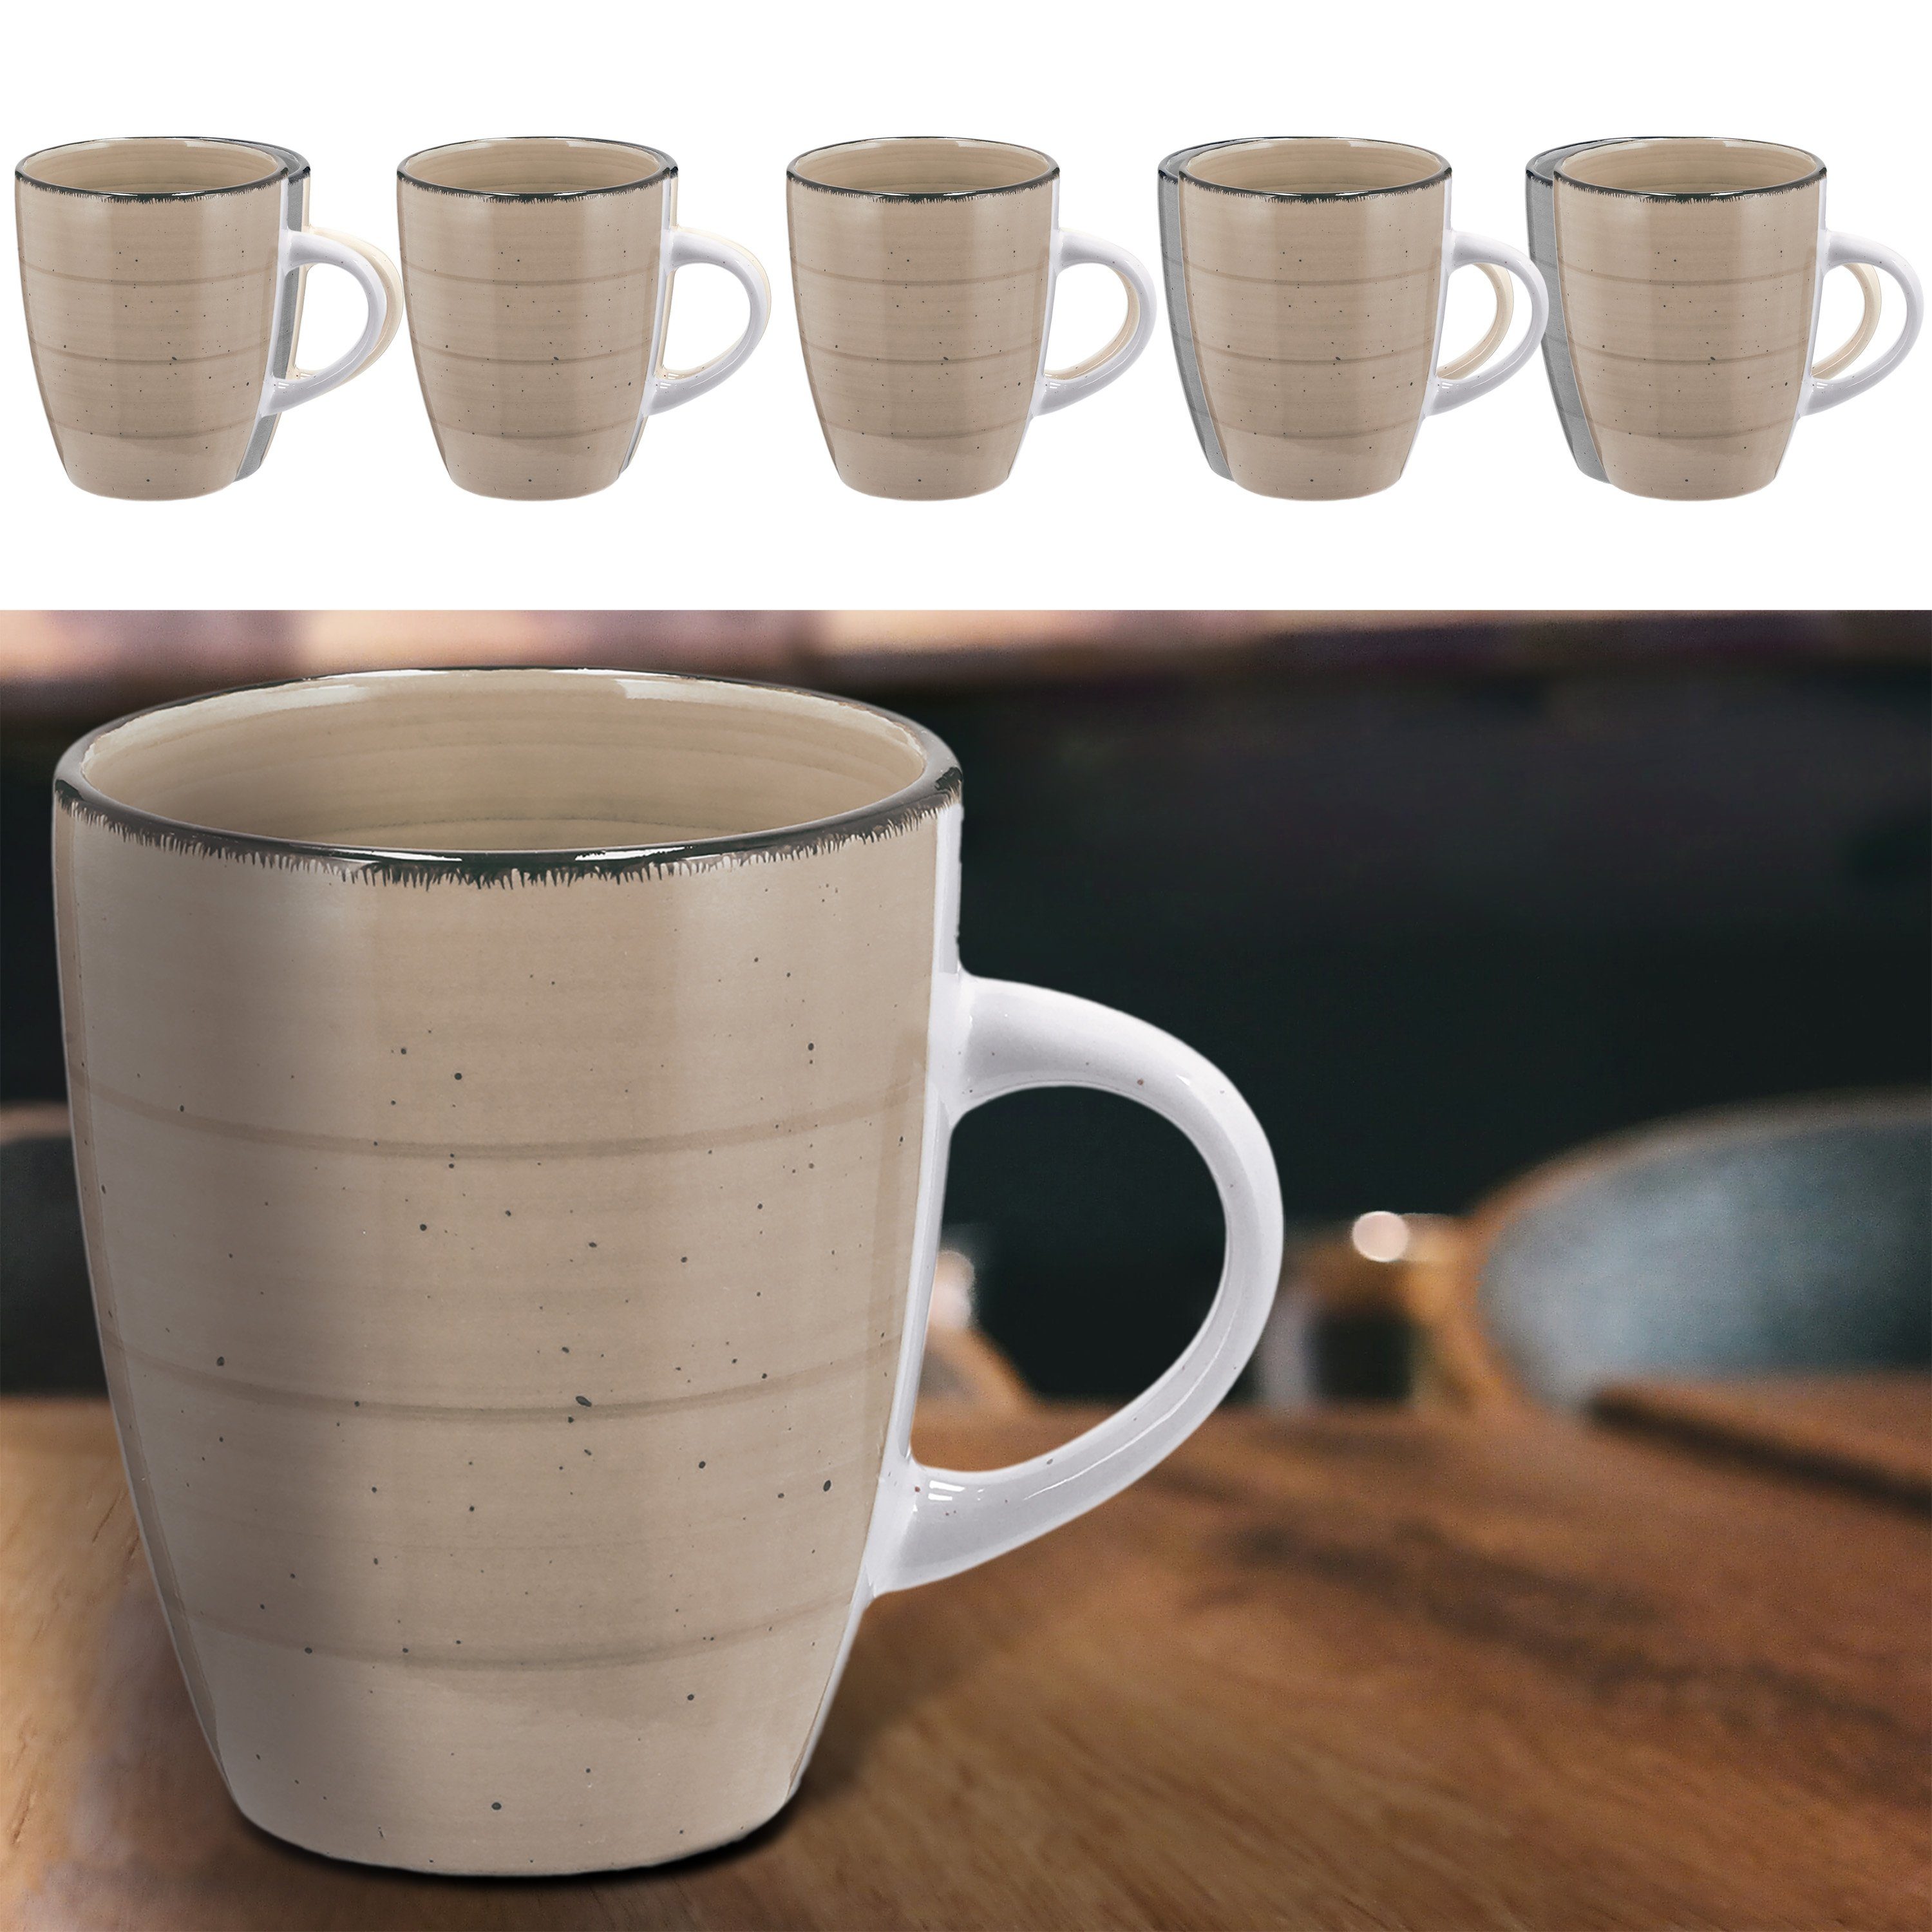 CEPEWA Tasse Kaffeebecher Steingut 6er Set beige 360ml 9x11cm Tasse Becher | Teebecher